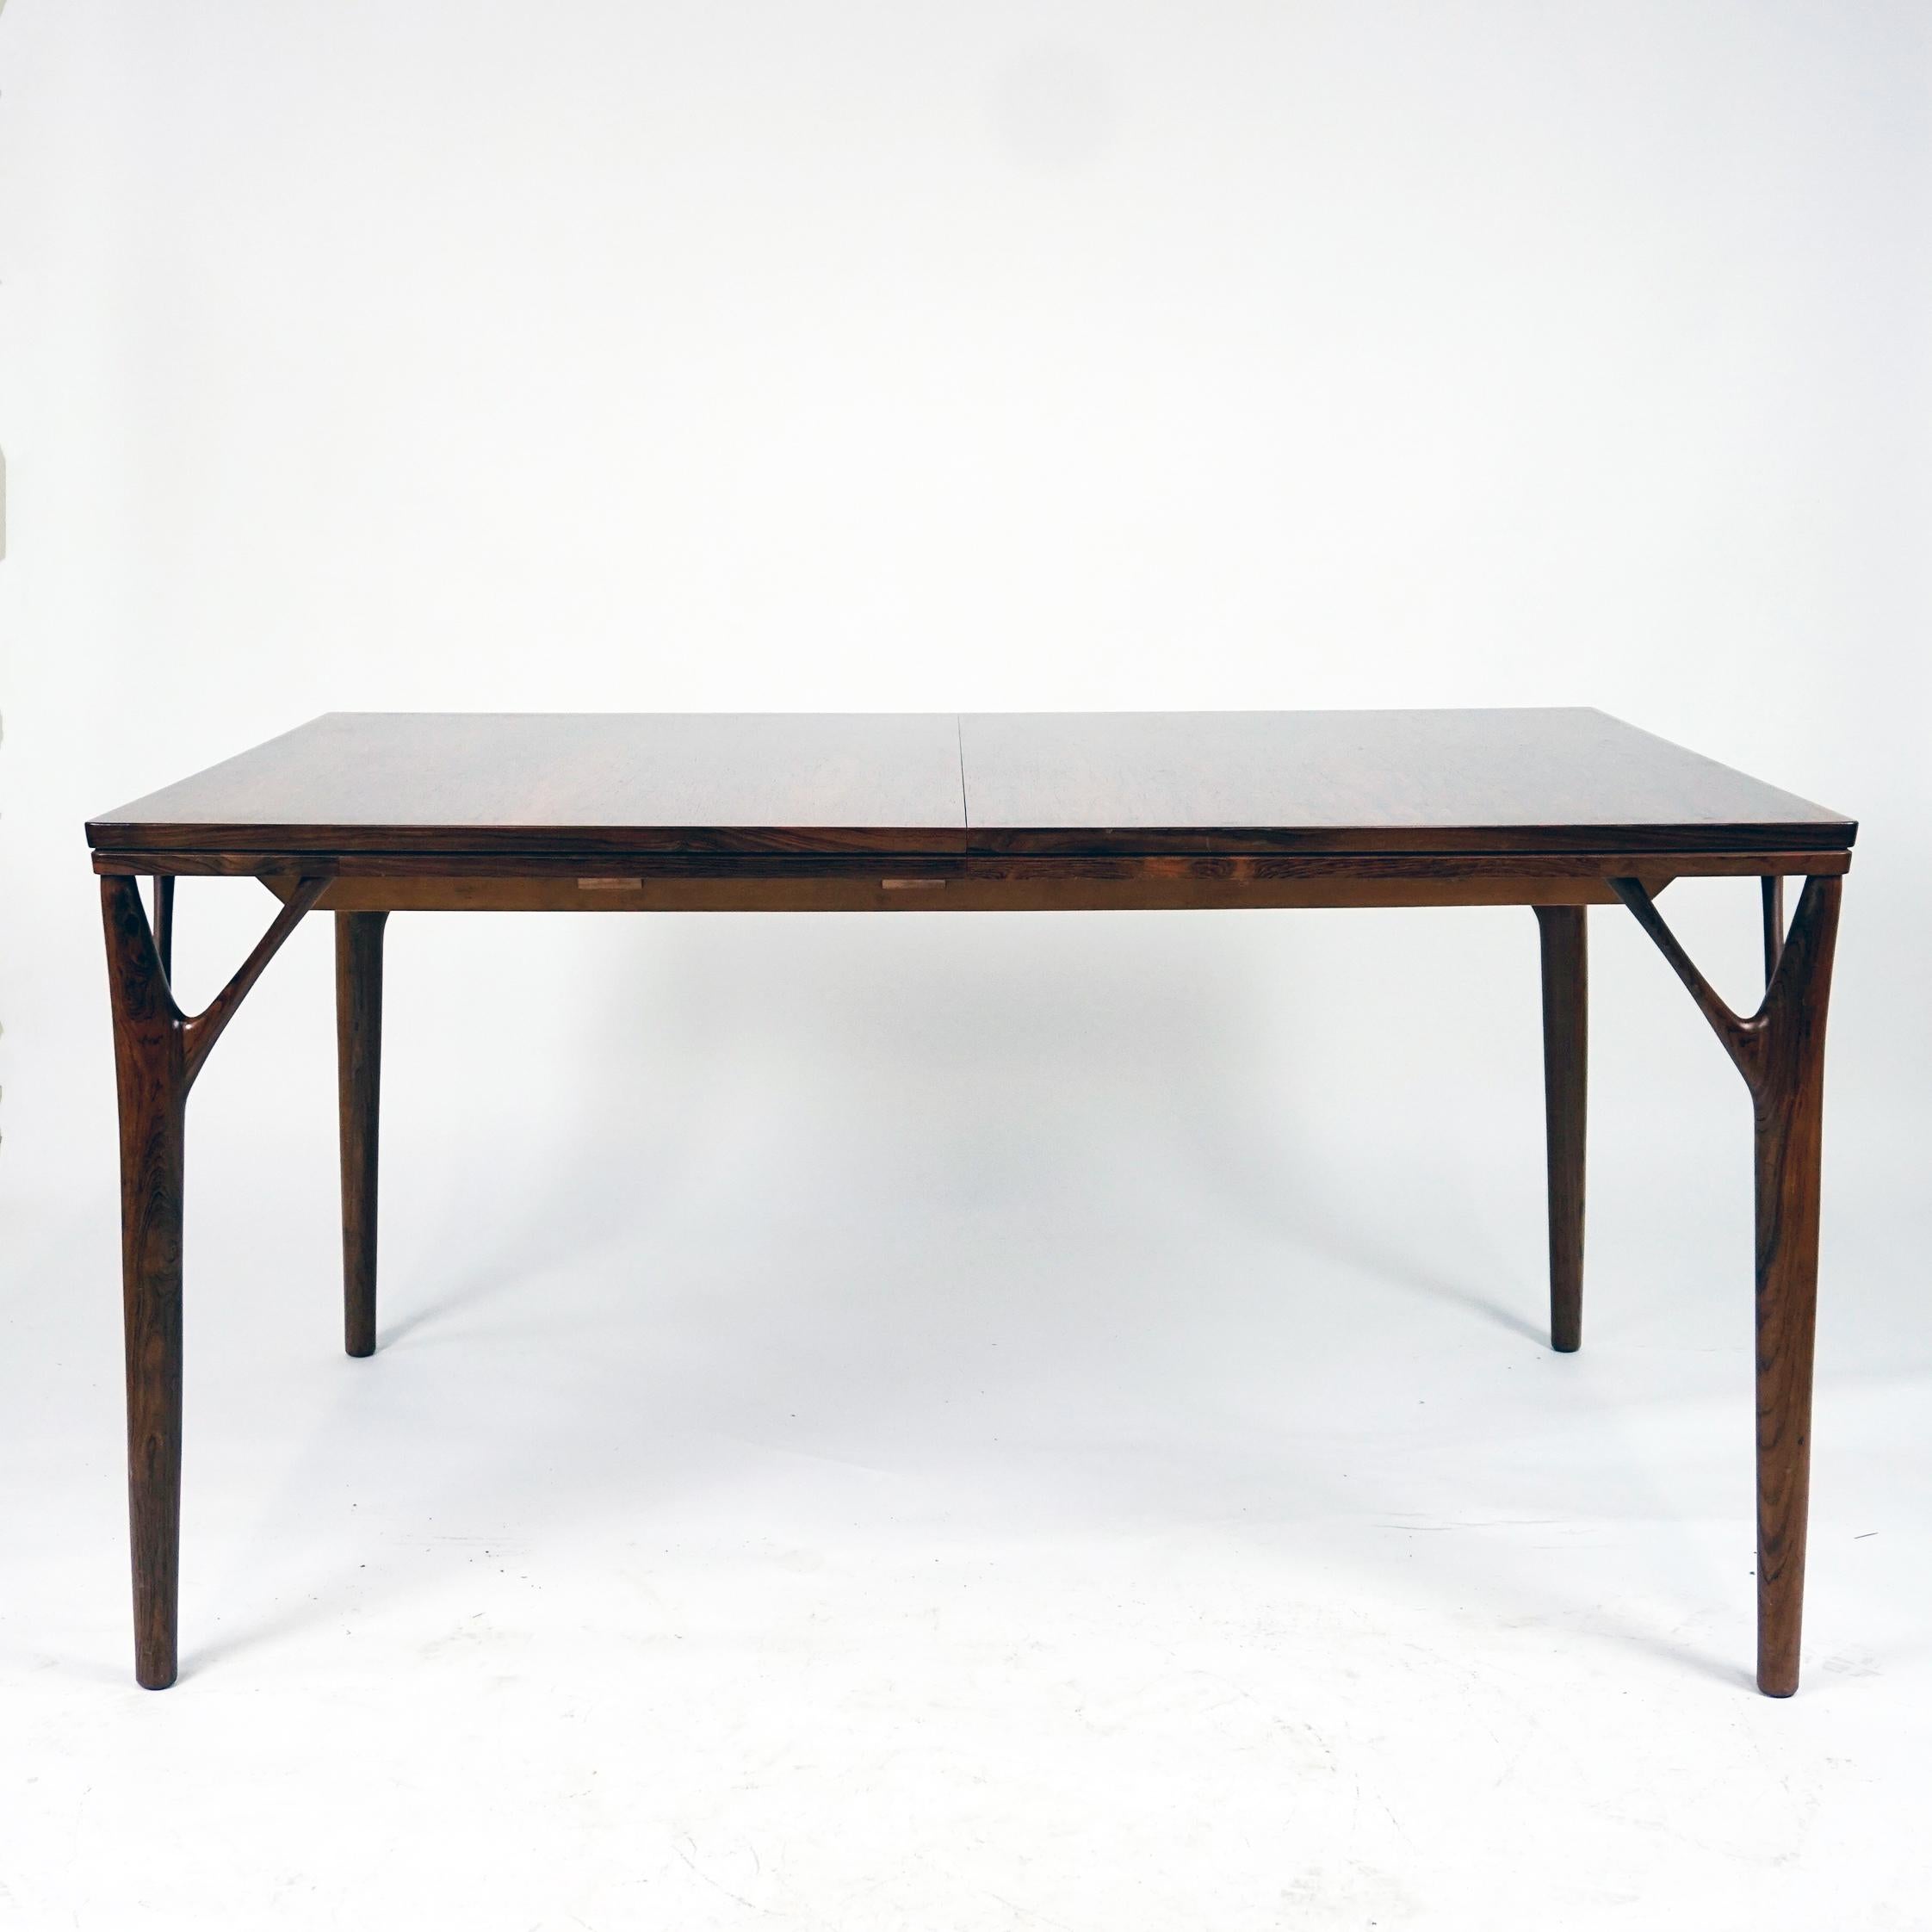 Questo tavolo da pranzo danese allungabile di The Modern Scandinavian è stato progettato da Helge Vestergaard-Jensen alla fine degli anni '50 e prodotto da Peder Pedersen negli anni '60 in Danimarca.
Possiamo definirlo un Highlight del periodo del